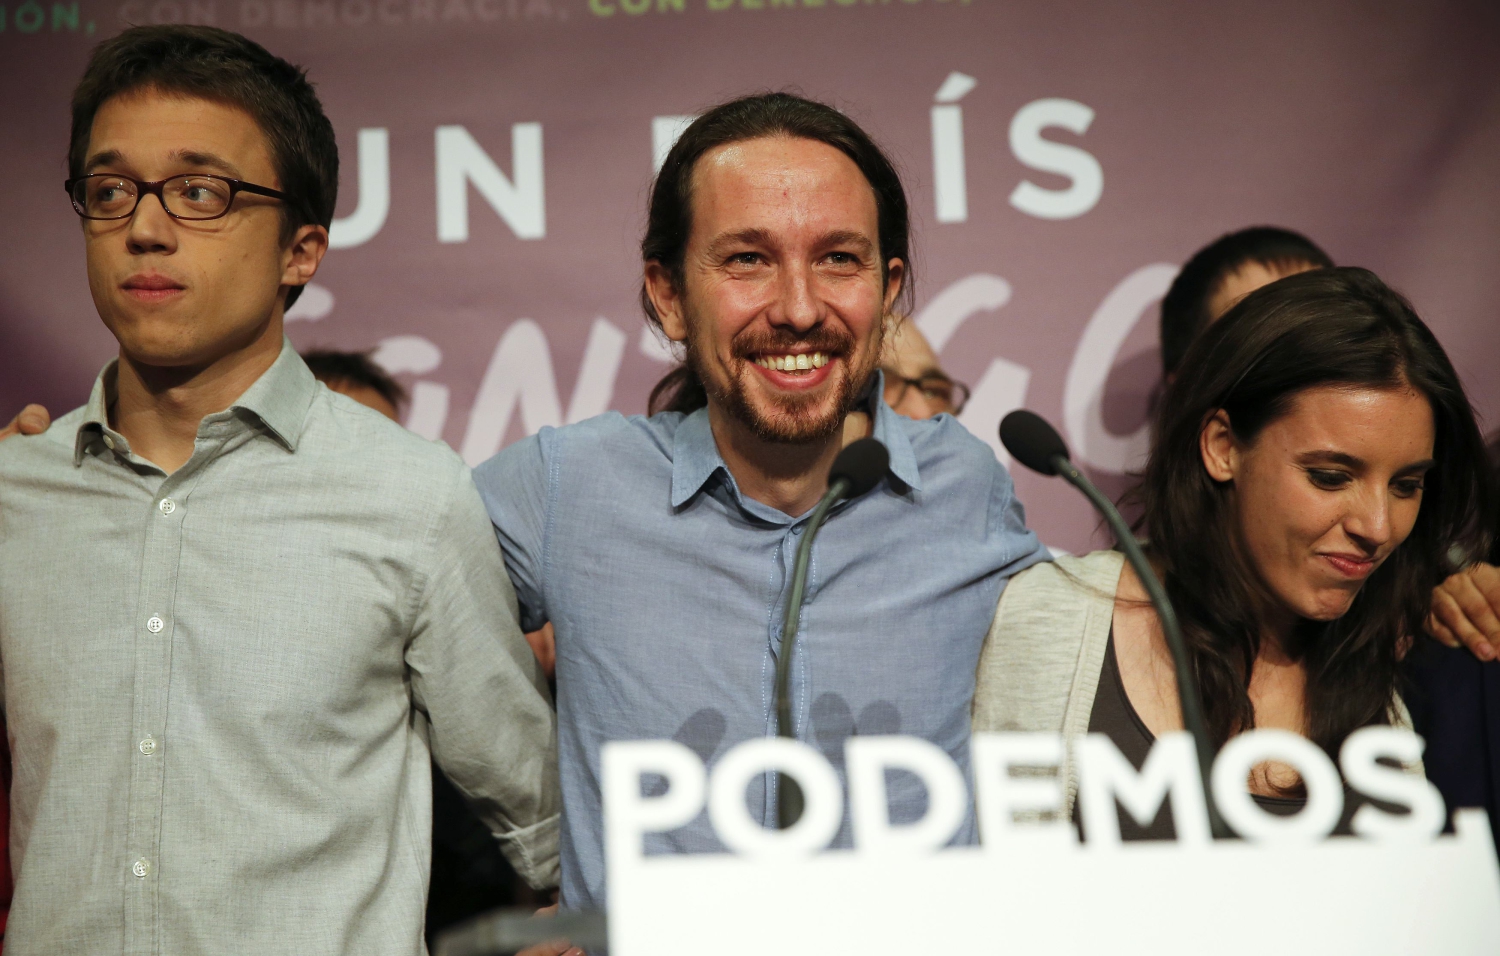 Éxito de Podemos, decepción de C’s, IU no obtiene grupo propio y UPyD desaparece